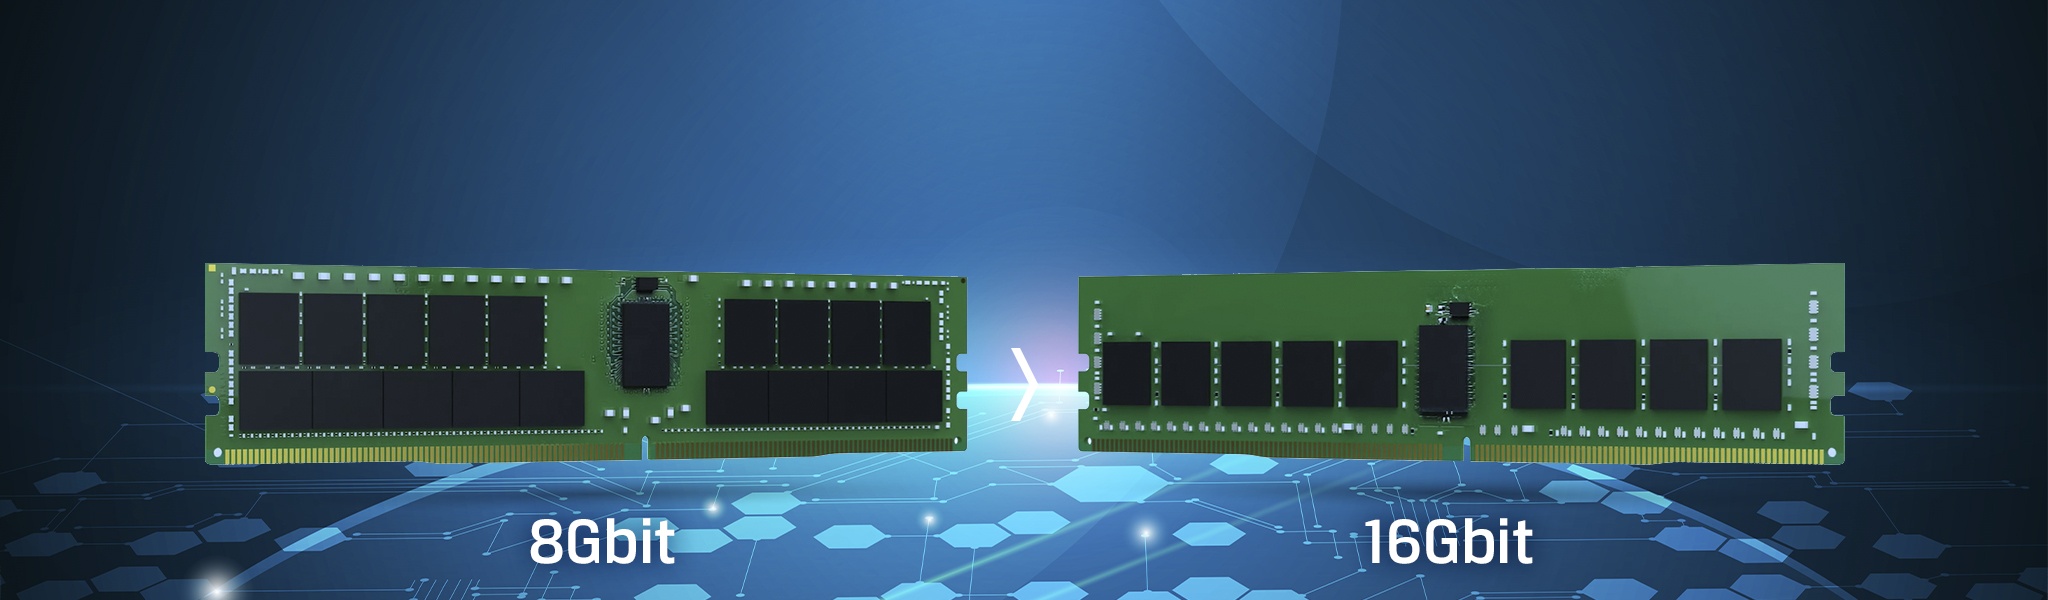 Die nächste Generation von 16Gbit-DDR4-DRAM ist eingetroffen